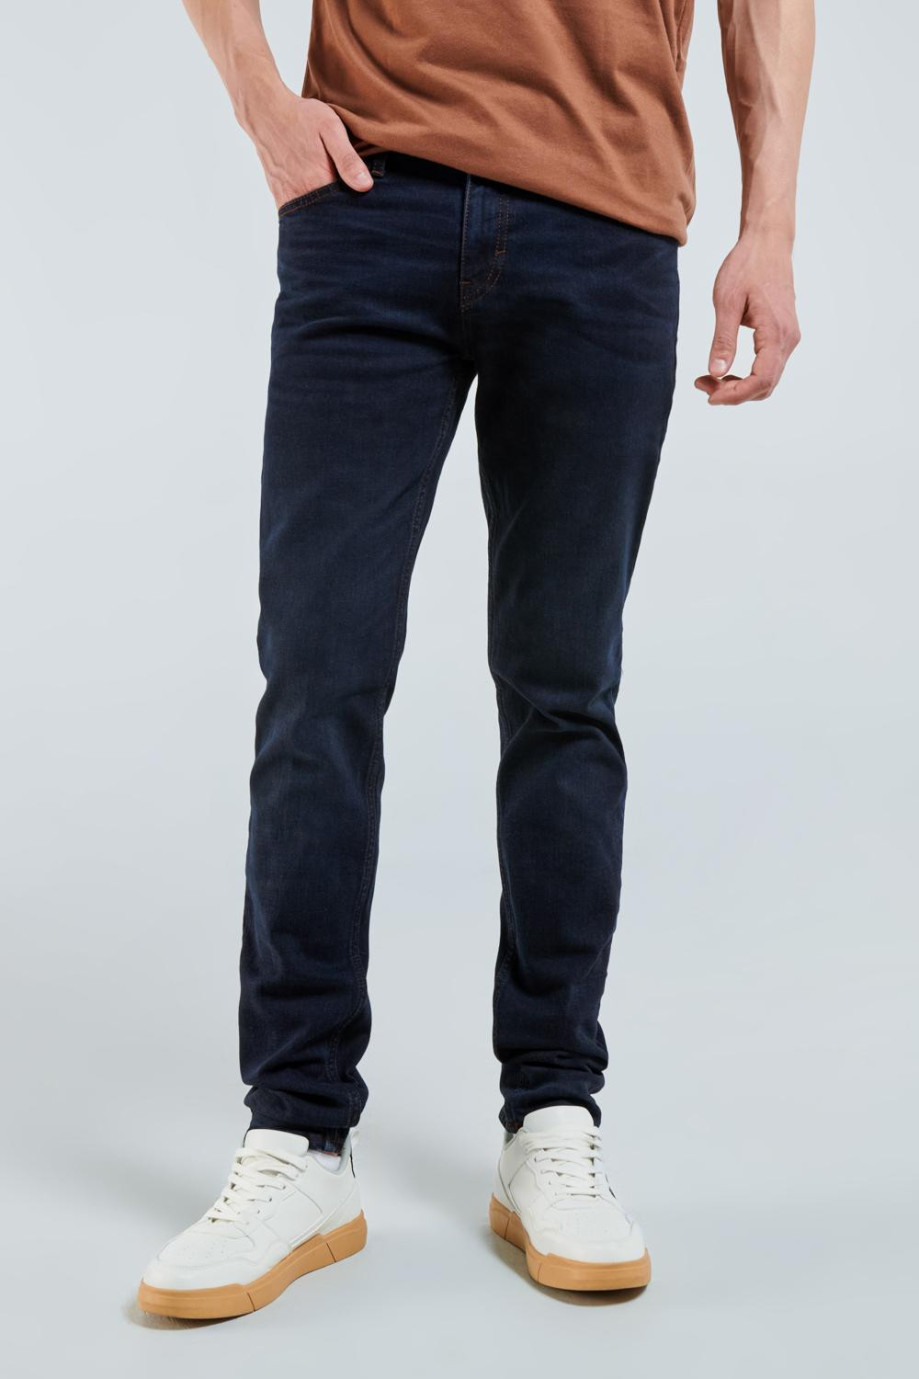 Jean slim azul intenso con tiro bajo, bolsillos y costuras en contraste